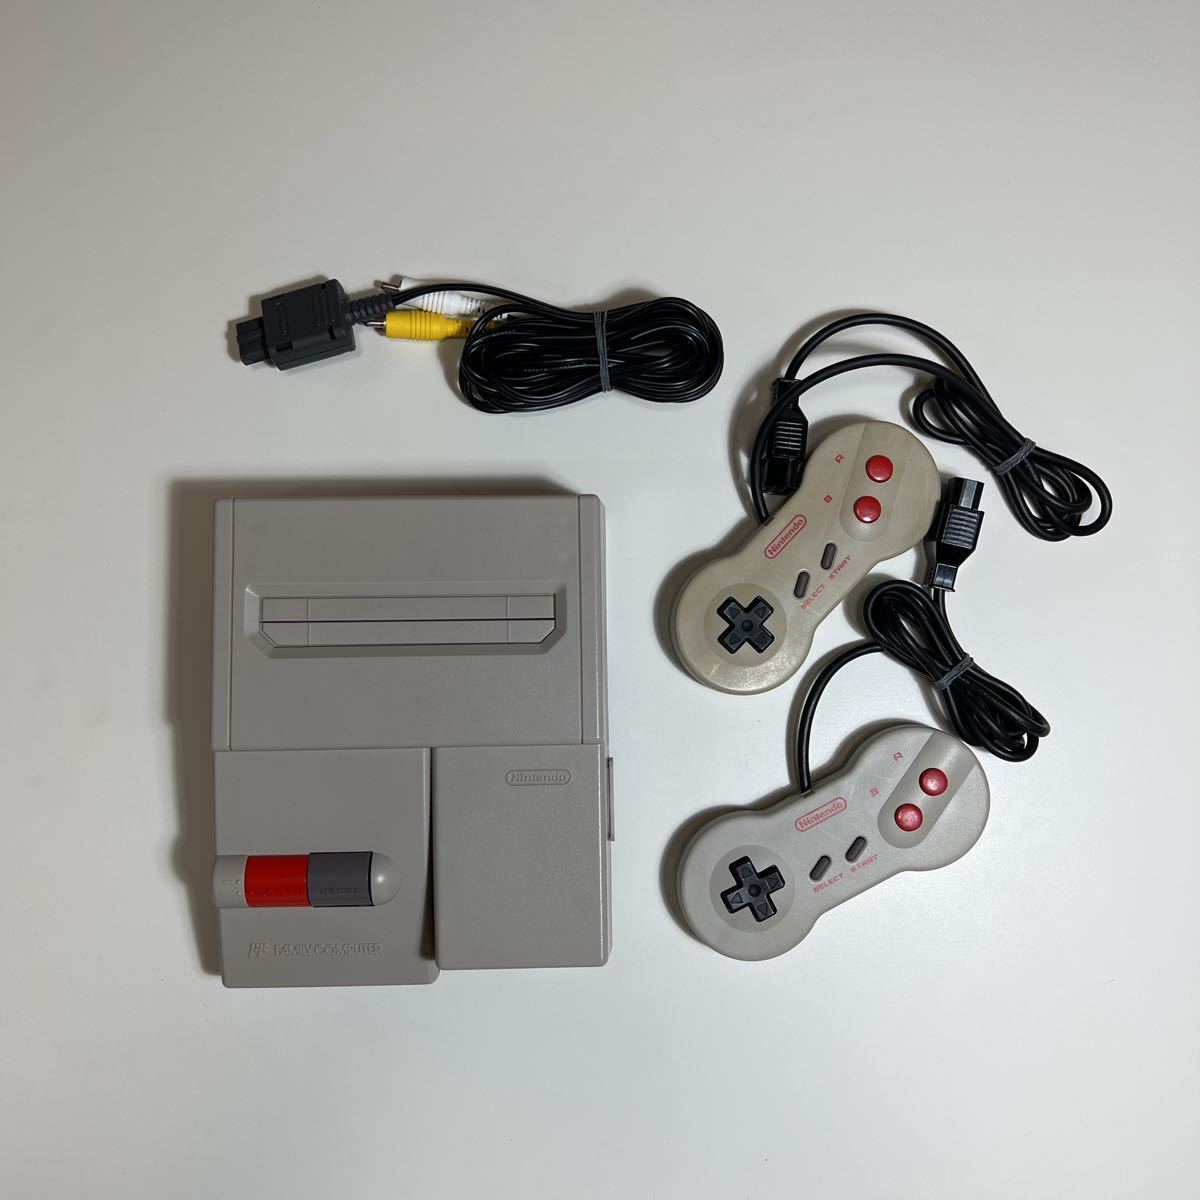 Nintendo Nintendo Nintendo New Nintendo Entertainment System (SNES) подтверждена эксплуатация